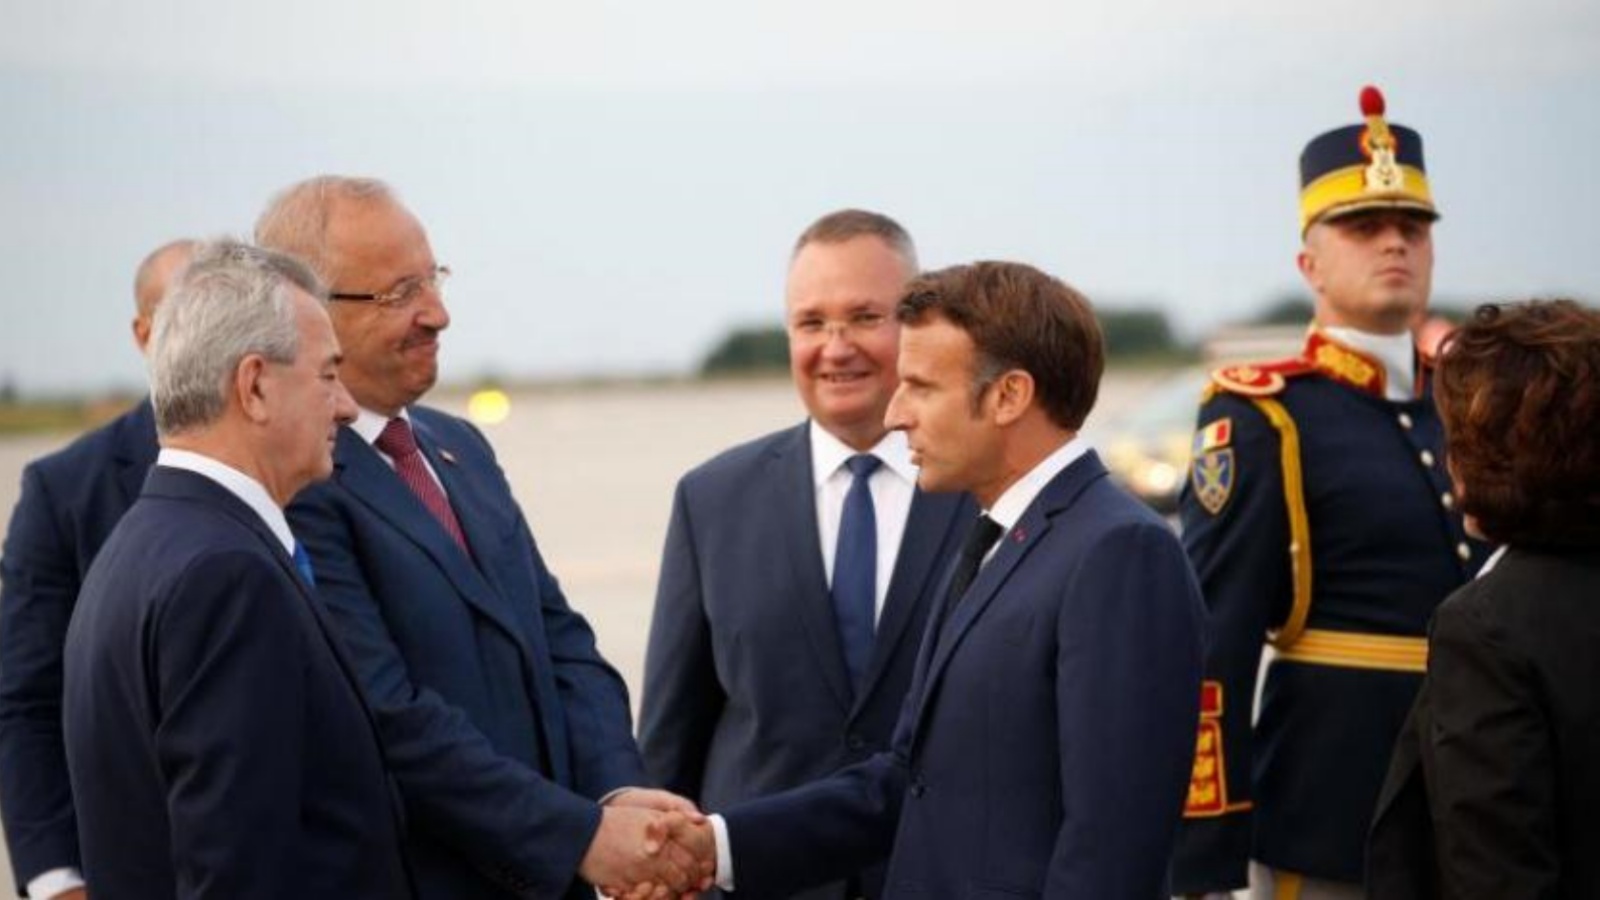 الرئيس الفرنسي إيمانويل ماكرون لدى وصوله إلى قاعدة ميخائيل كوغالشينيرو في رومانيا